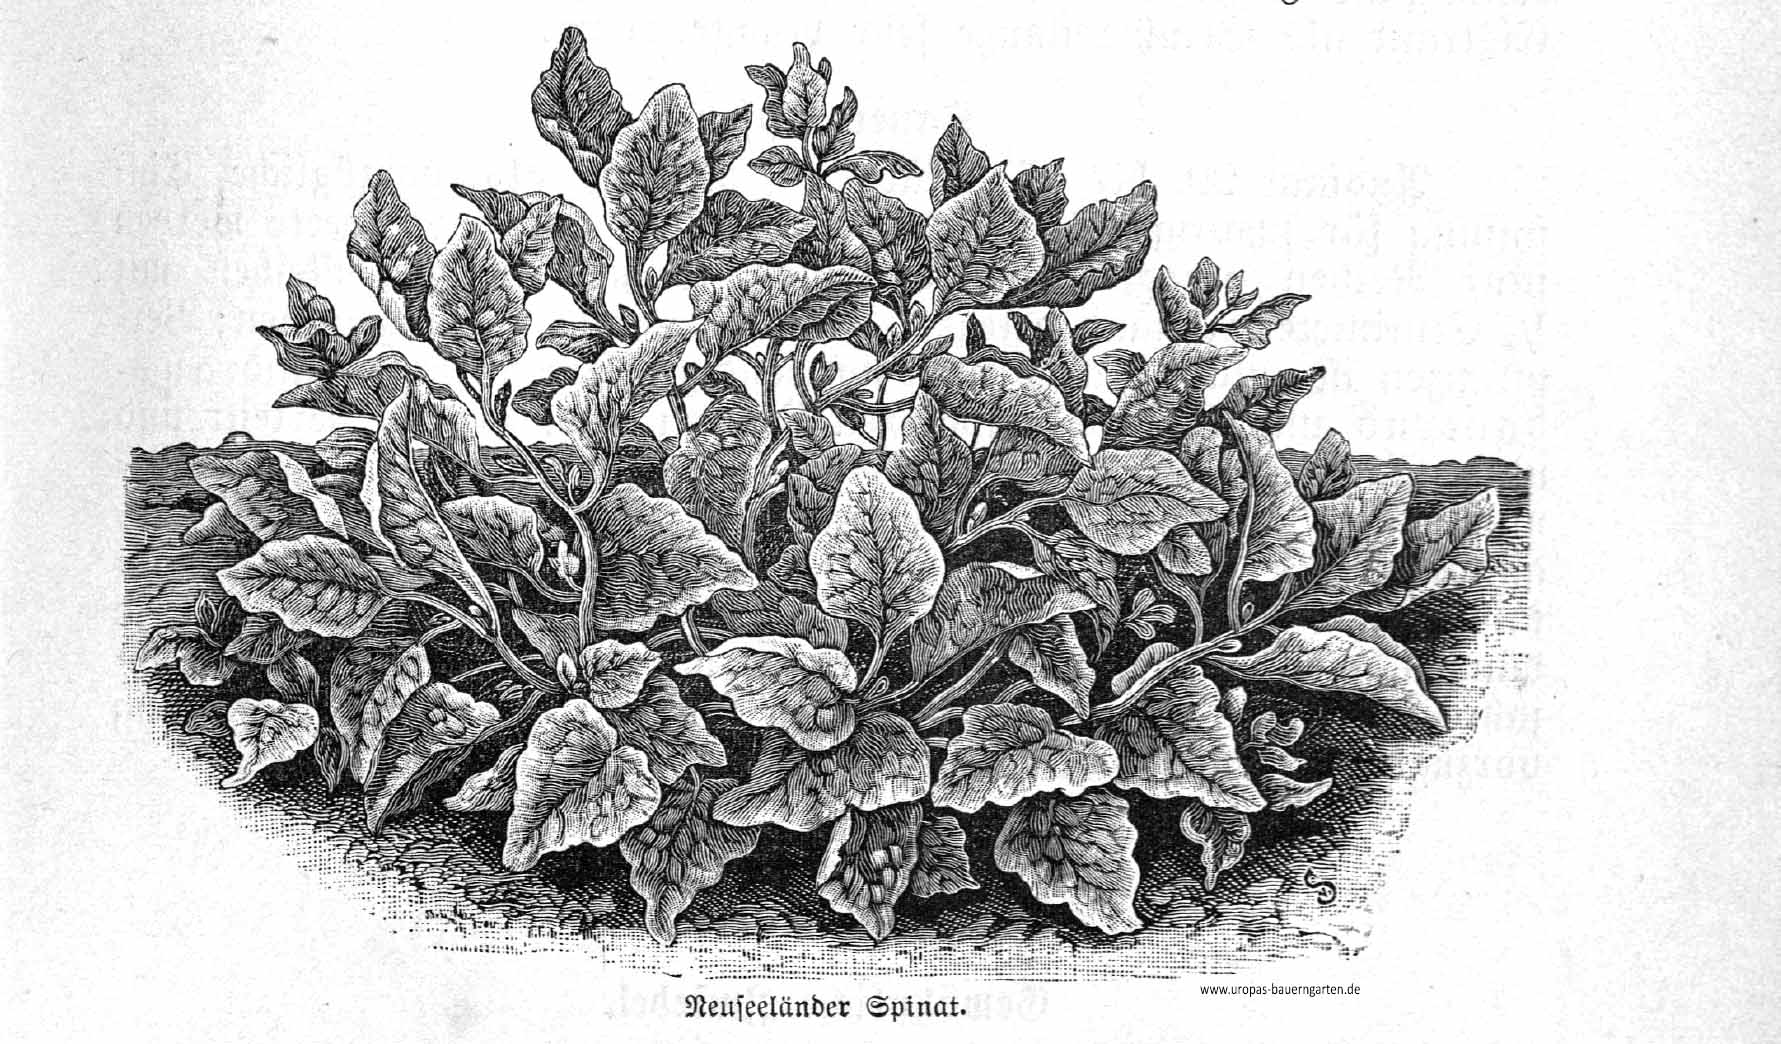 Das Bild zeigt eine detailgetreue Zeichnung von einem Neuseeländer Spinat (lat. Tetragonia tetragonioides)